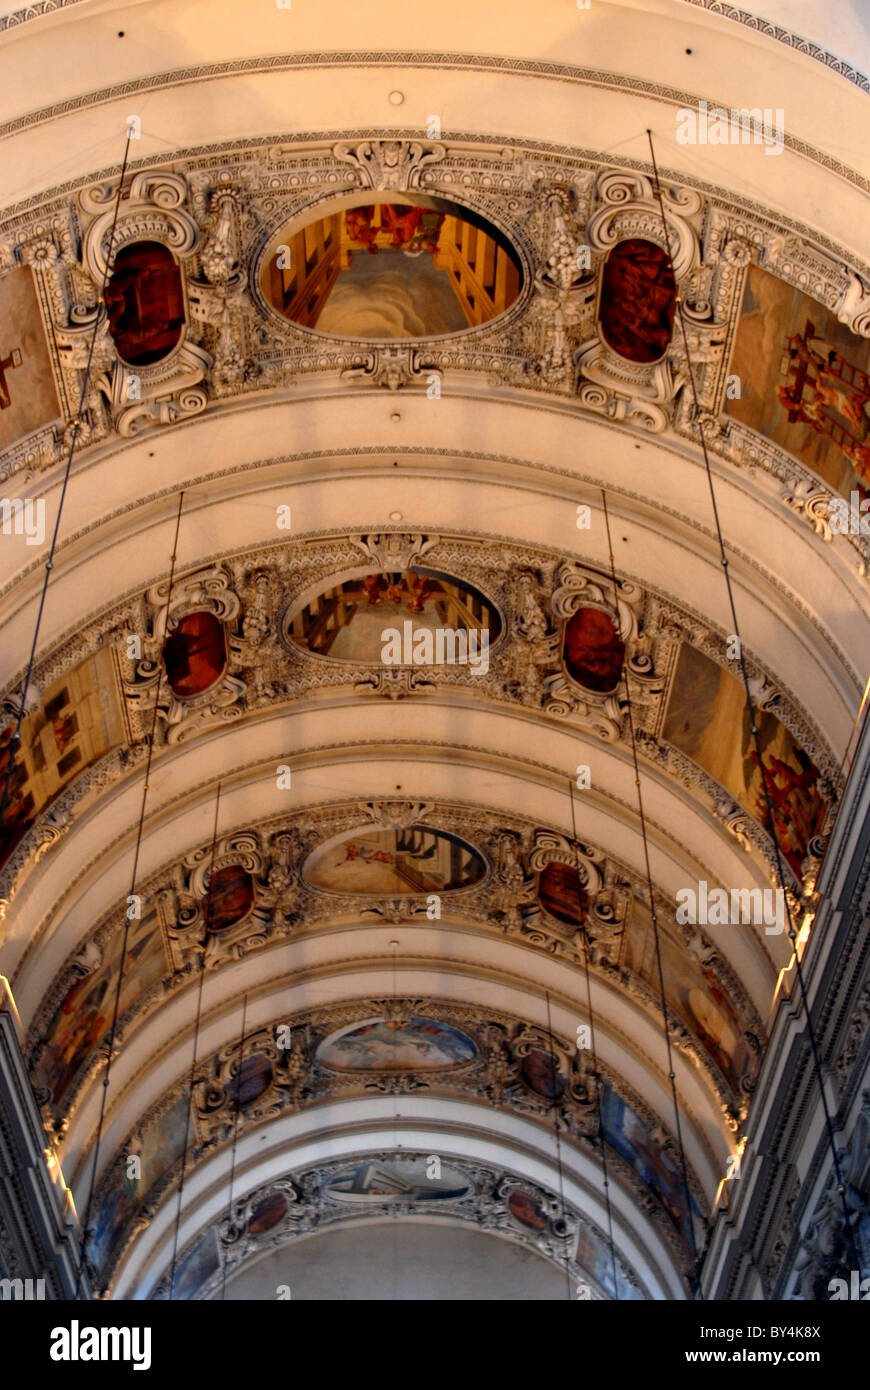 Dom at Salburg, interior ceiling, Austria Stock Photo